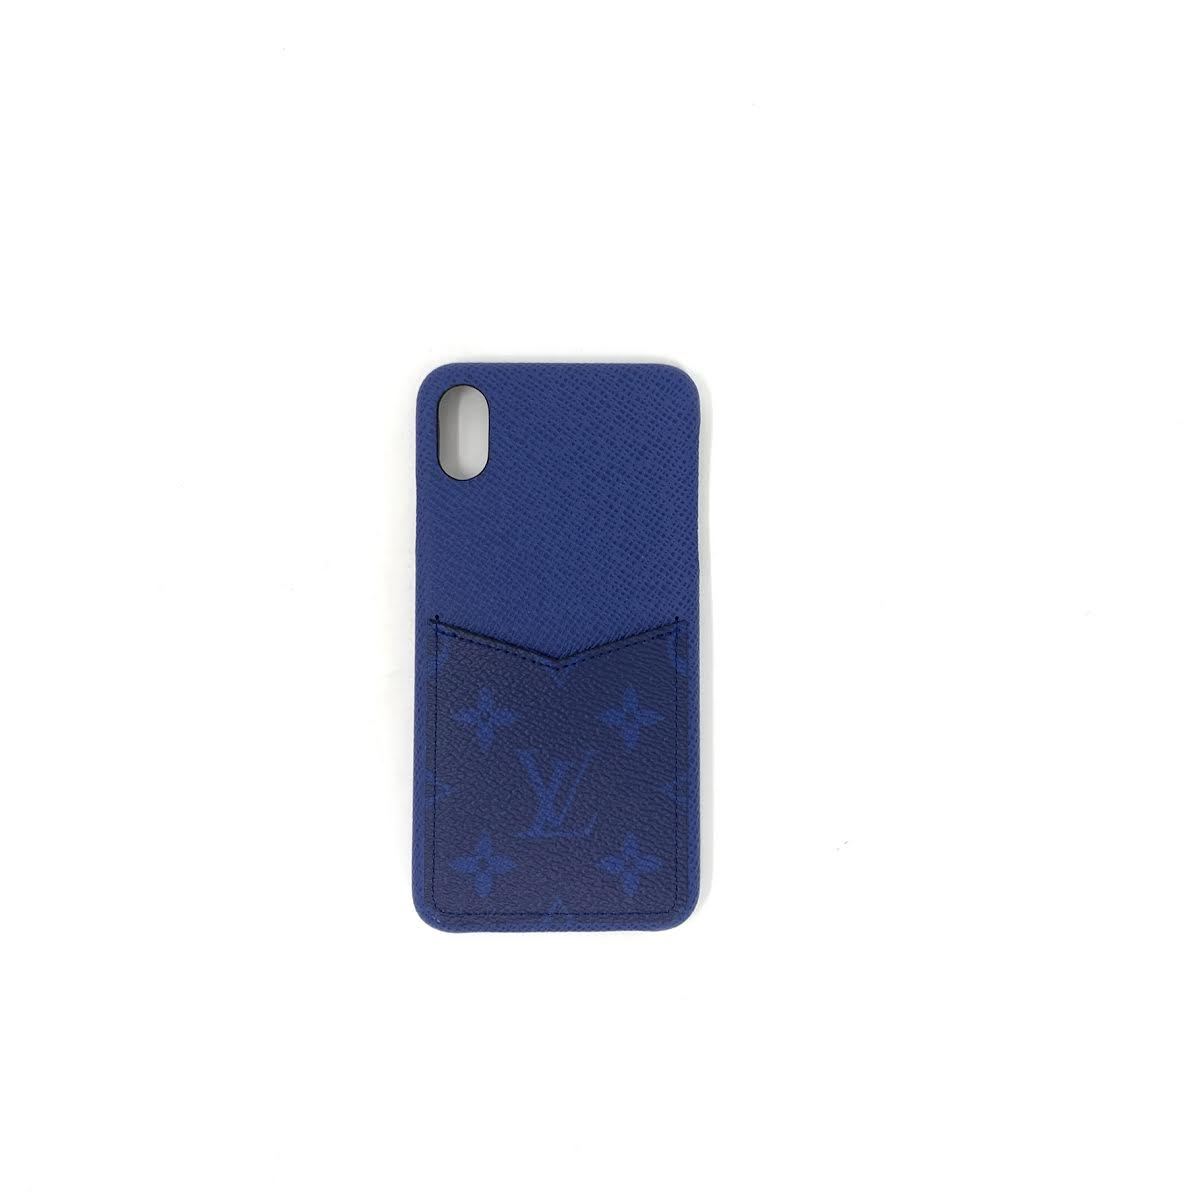 Iphone X Bumper Case Louis Vuitton Case